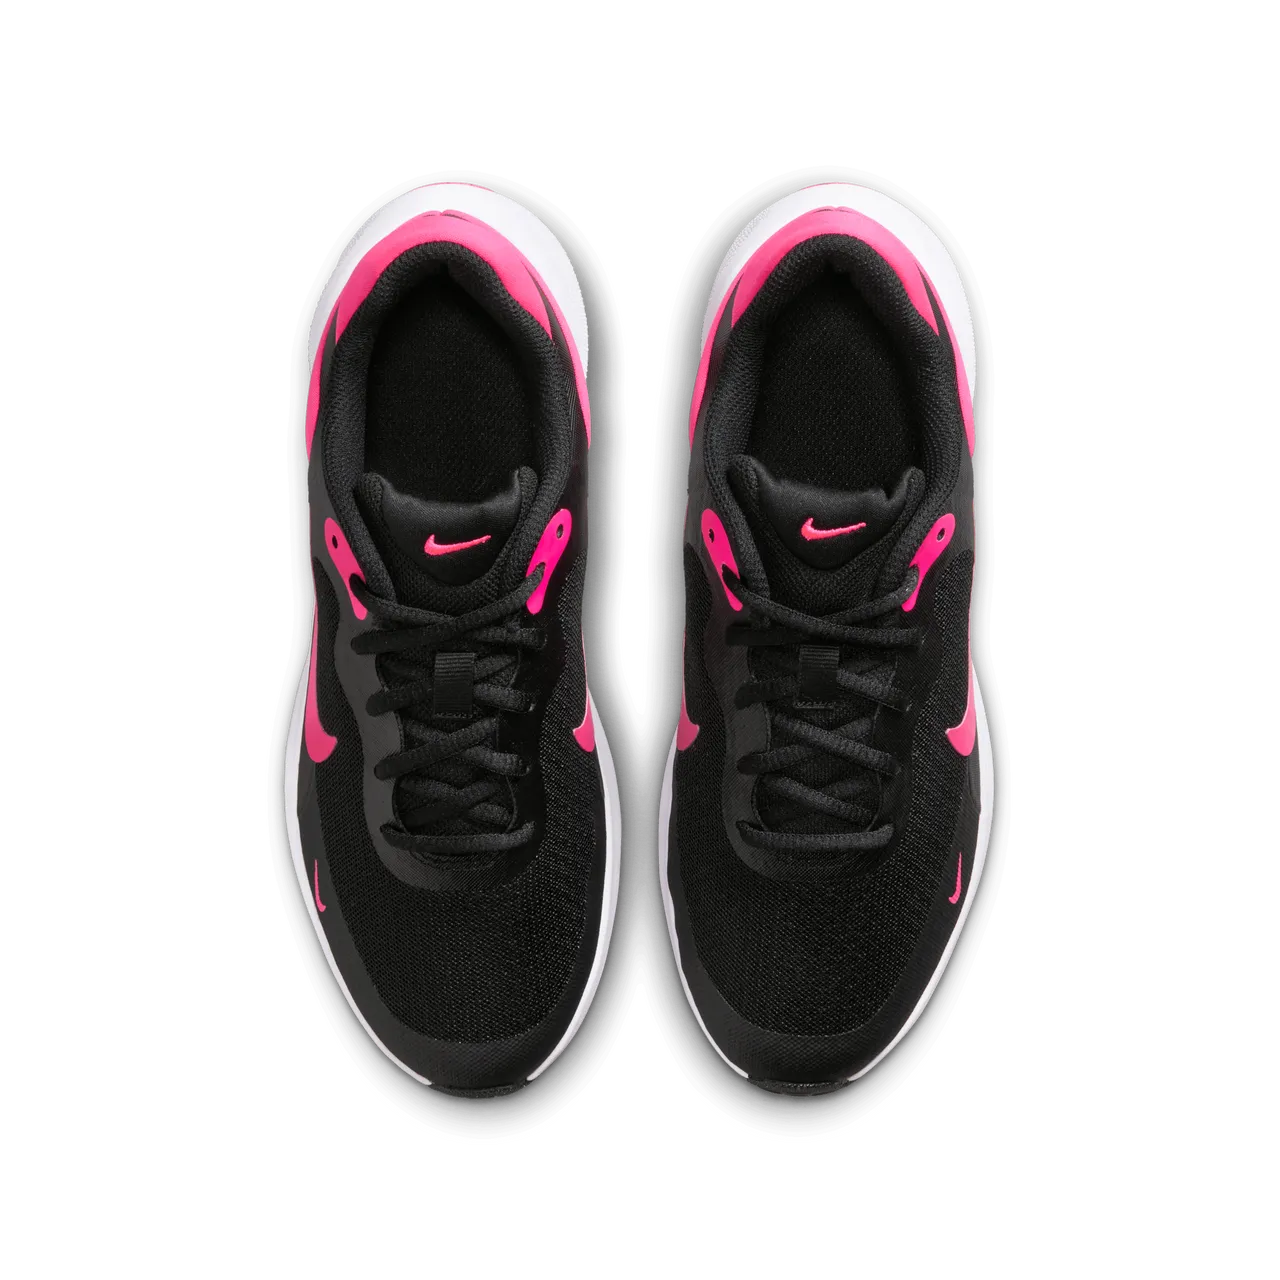 Nike Revolution 7 Laufschuh für ältere Kinder - Schwarz